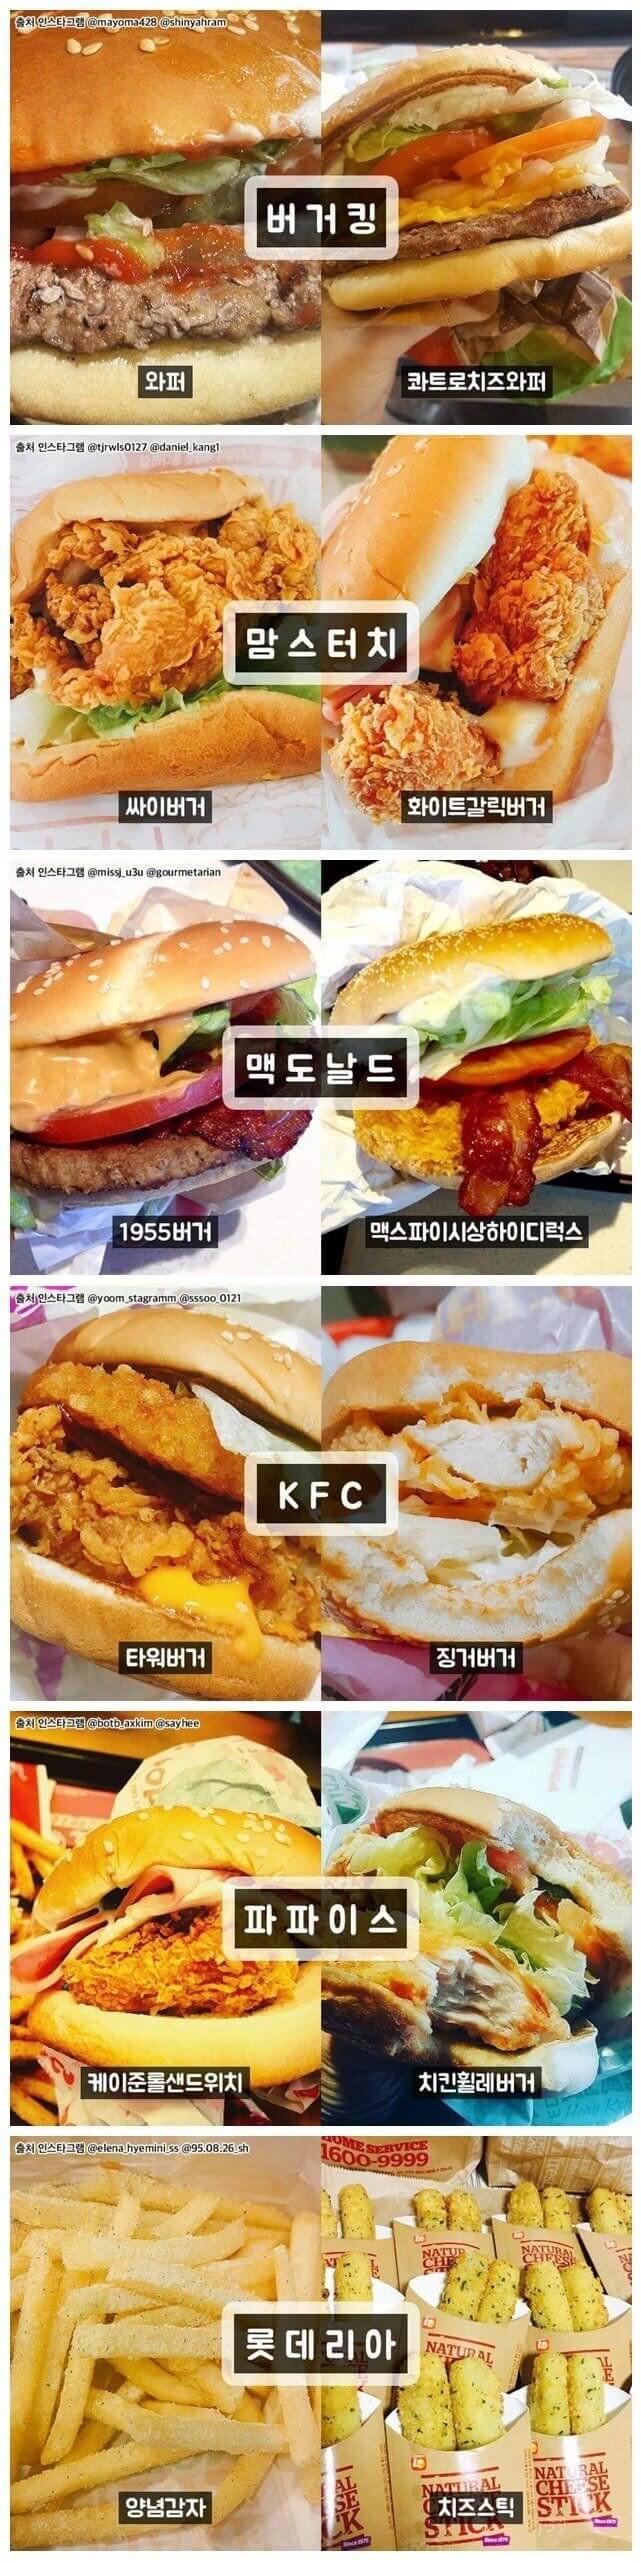 햄버거 프랜차이즈별 인기메뉴